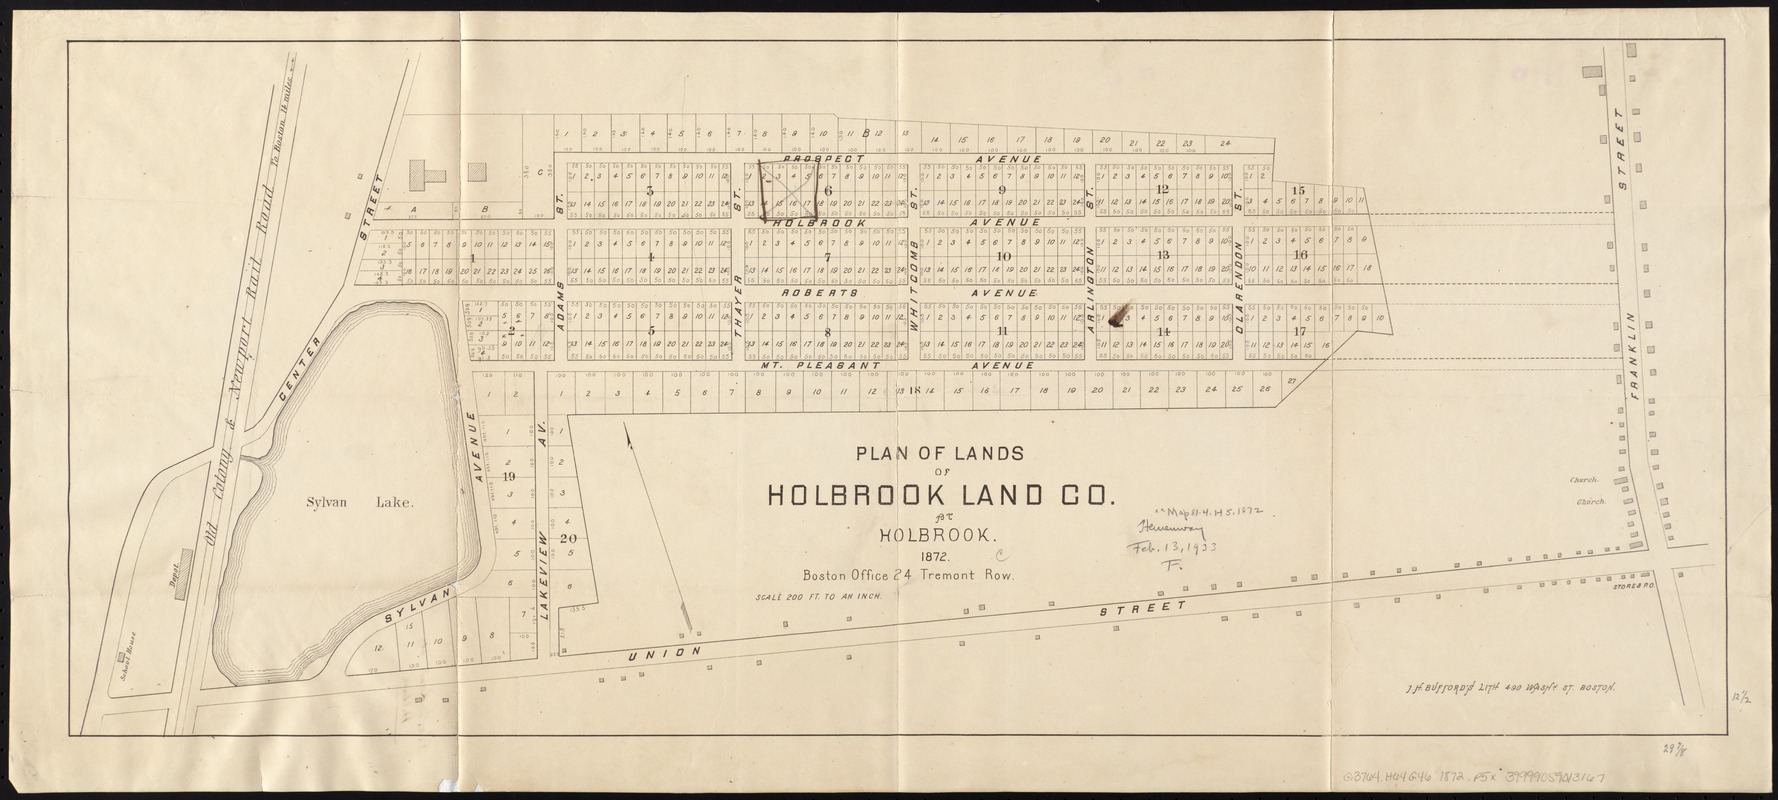 Plan of lands of Holbrook Land Co. at Holbrook 1872